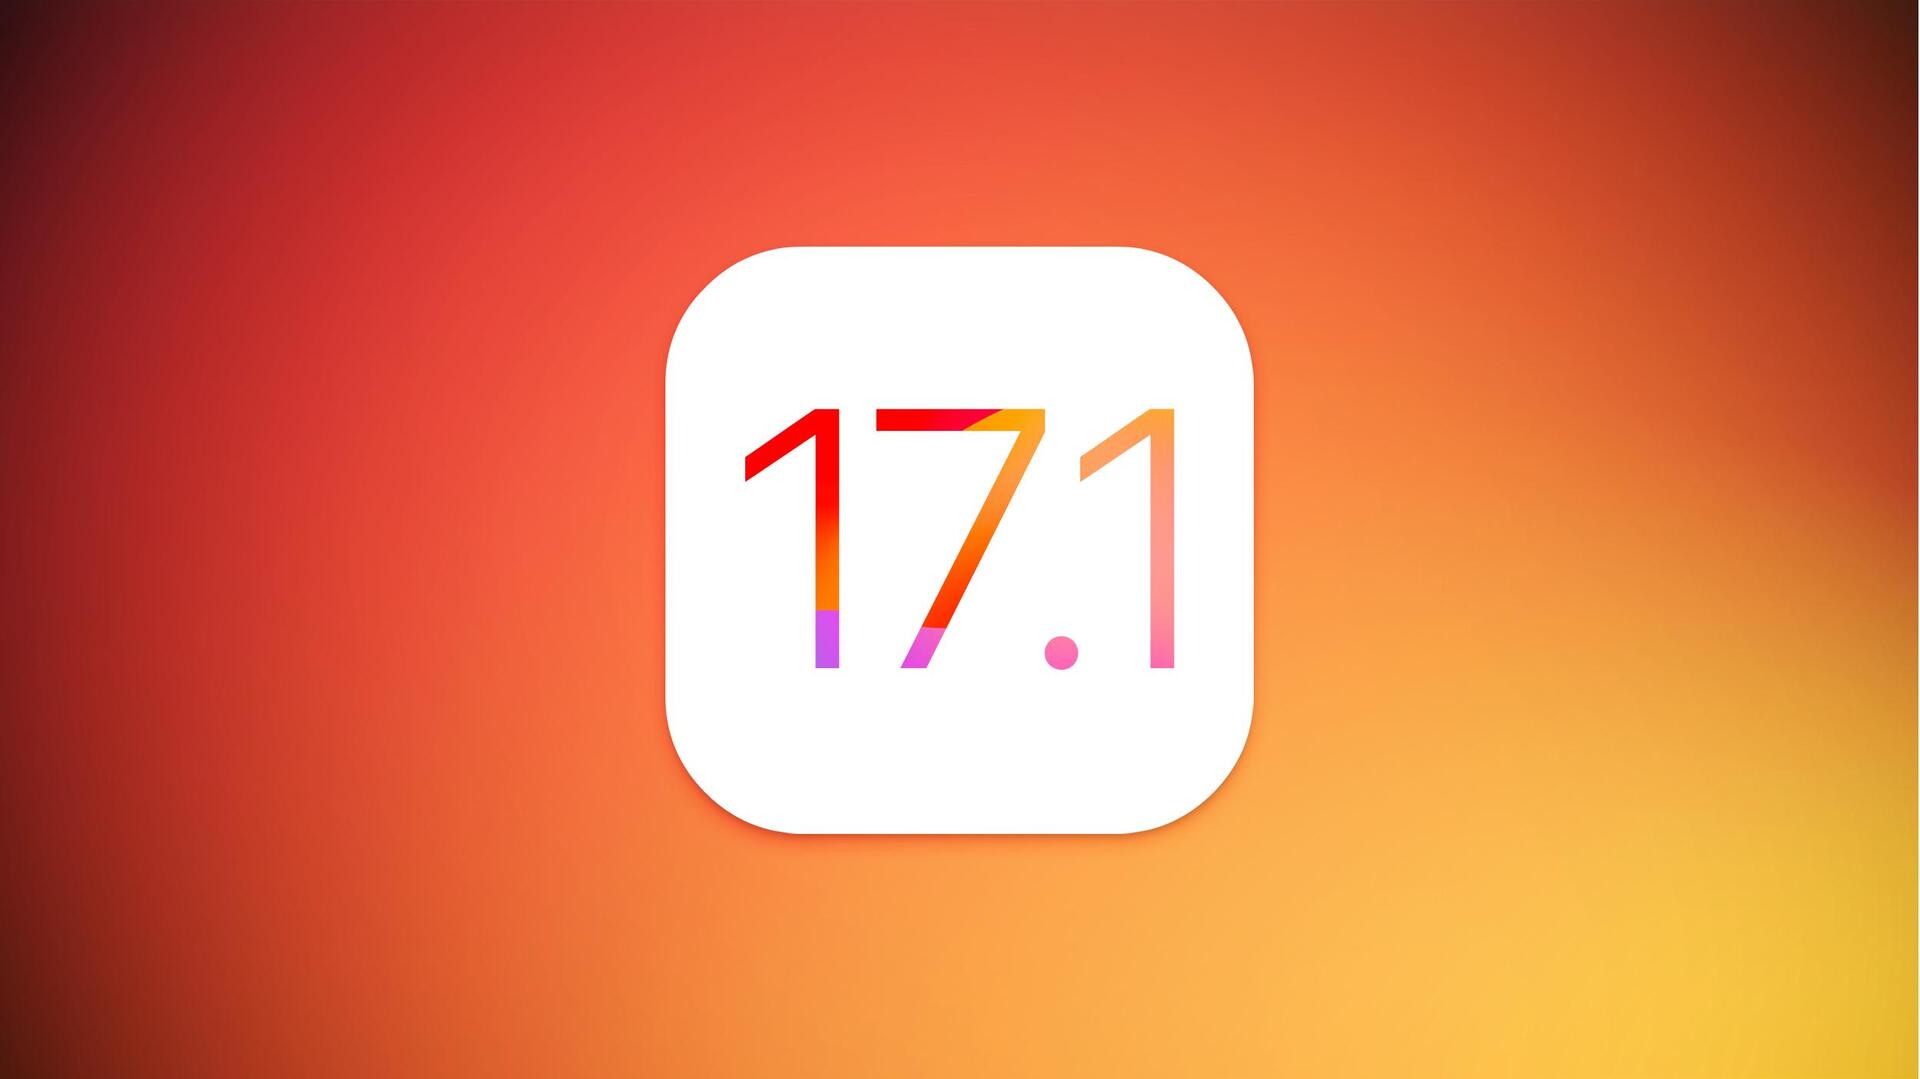 ऐपल कल जारी कर सकती है iOS 17.1 अपडेट, इन नए फीचर्स के मिलने की उम्मीद